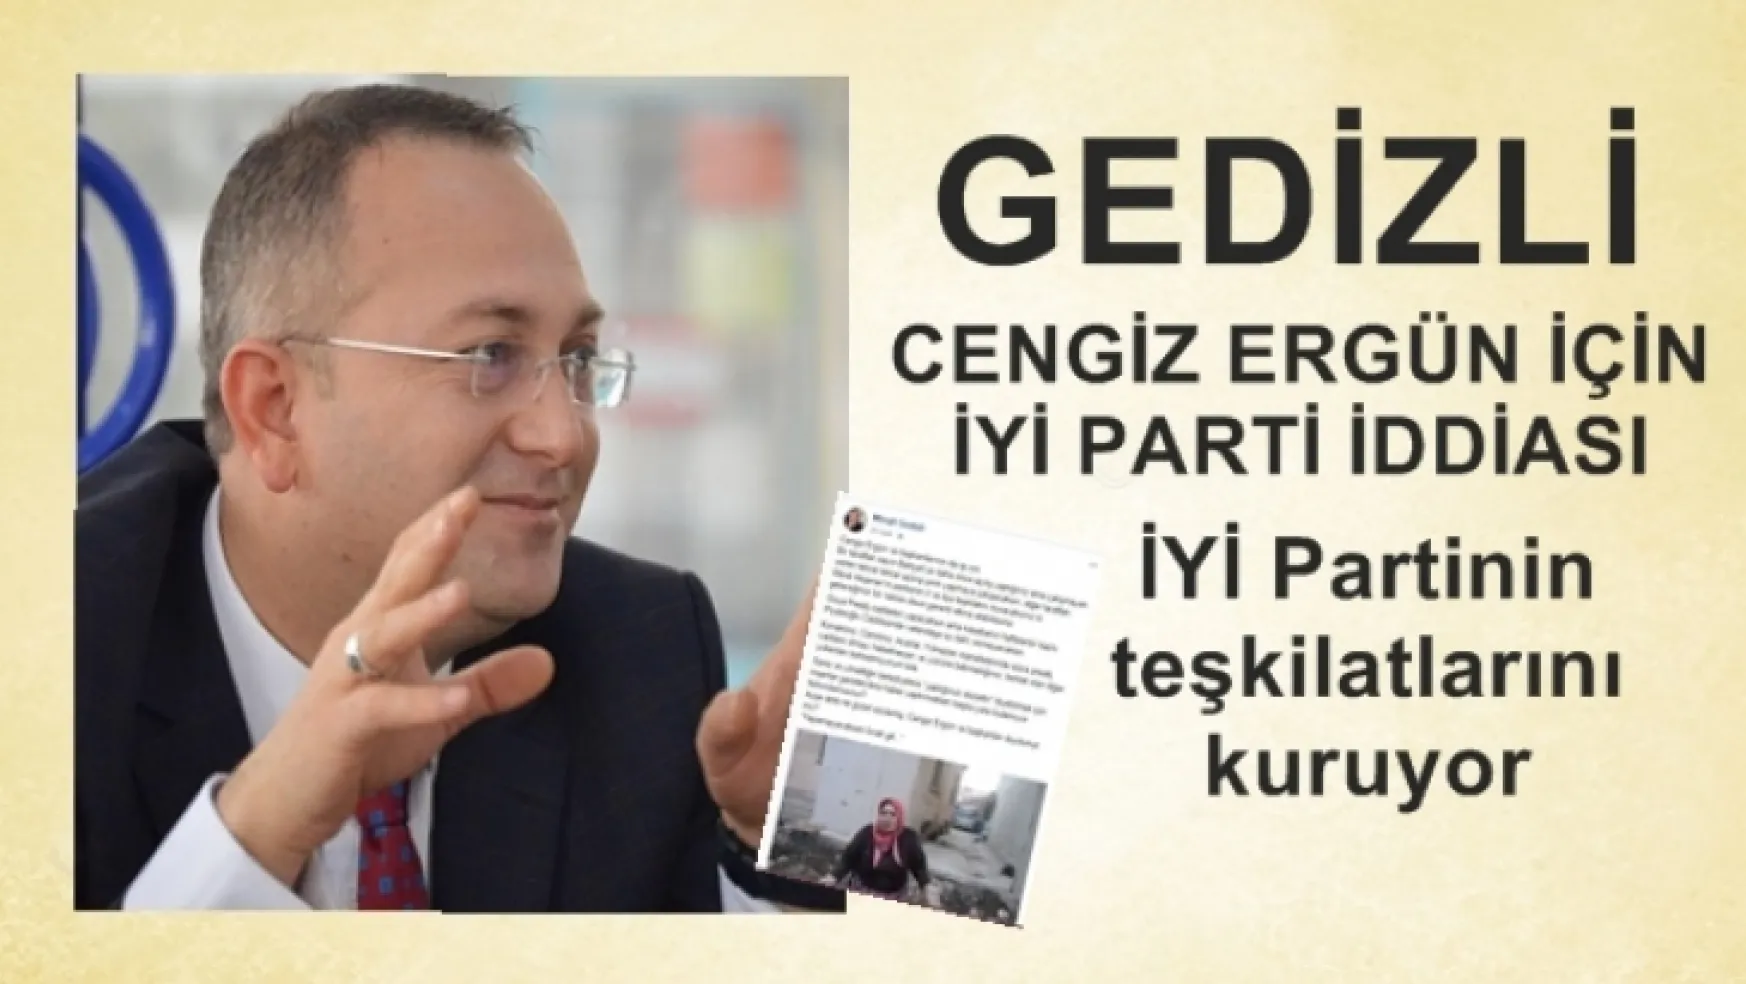 Gedizli'den, Cengiz Ergün için İYİ Parti iddiası!